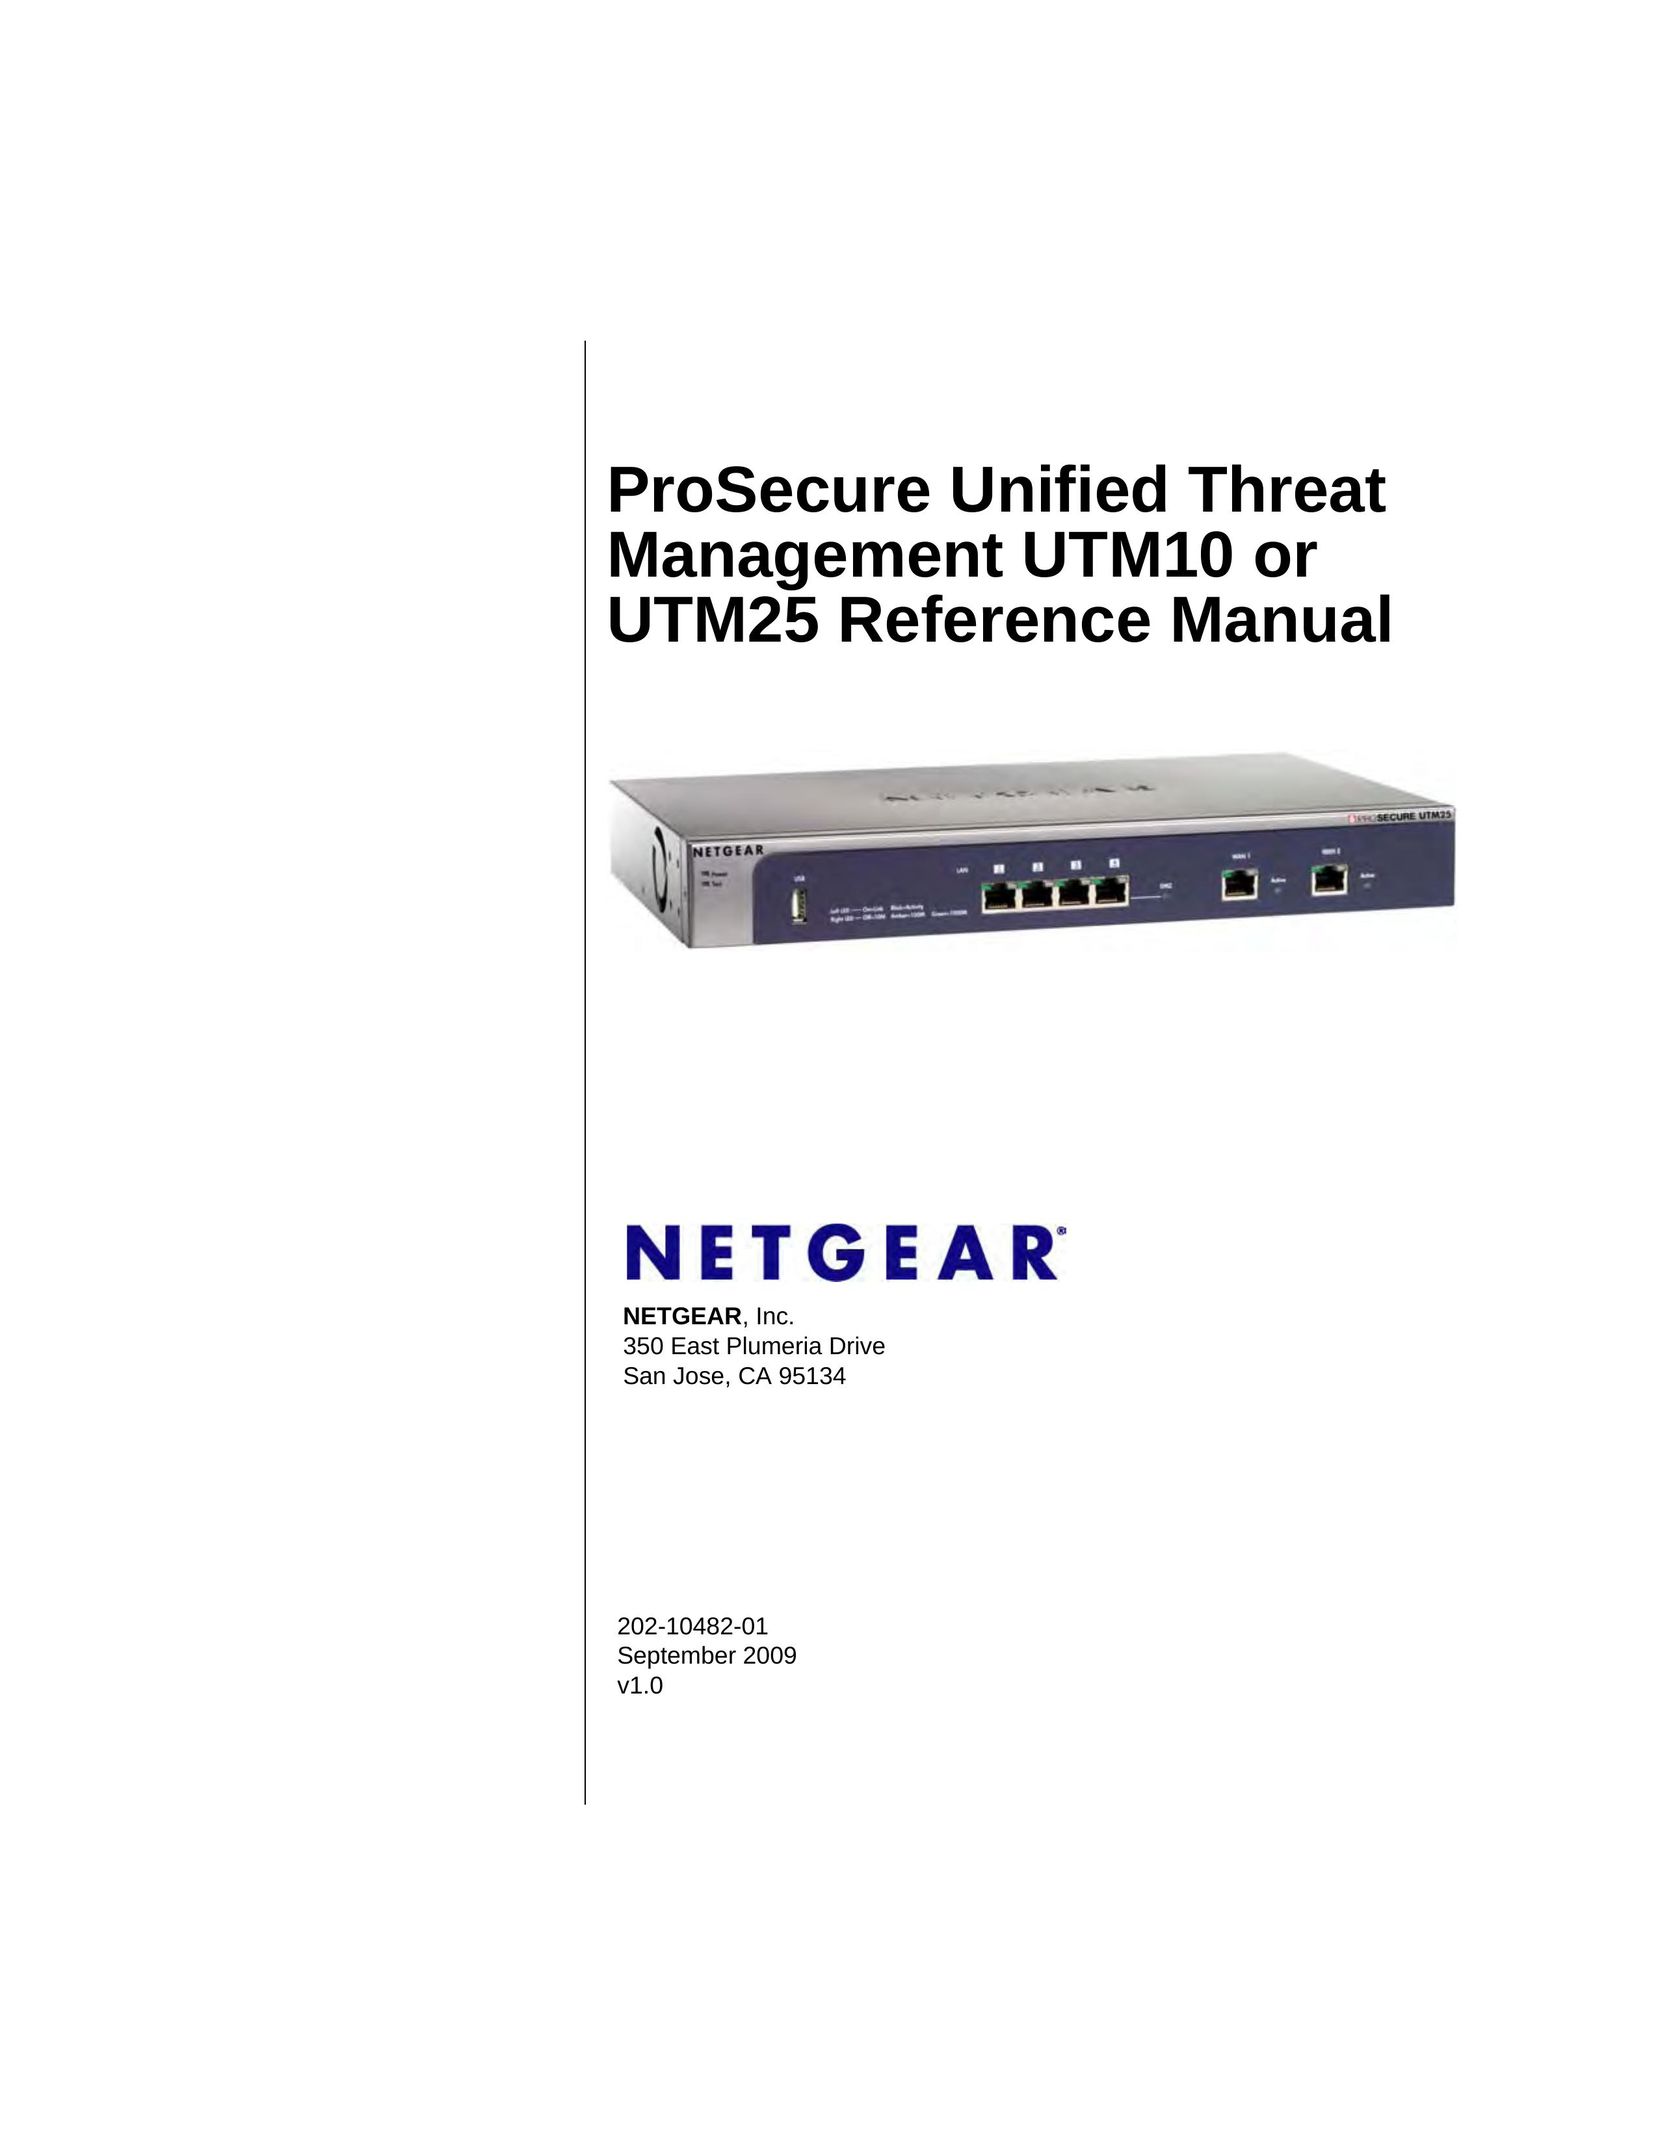 NETGEAR UTM25-100NAS Router User Manual